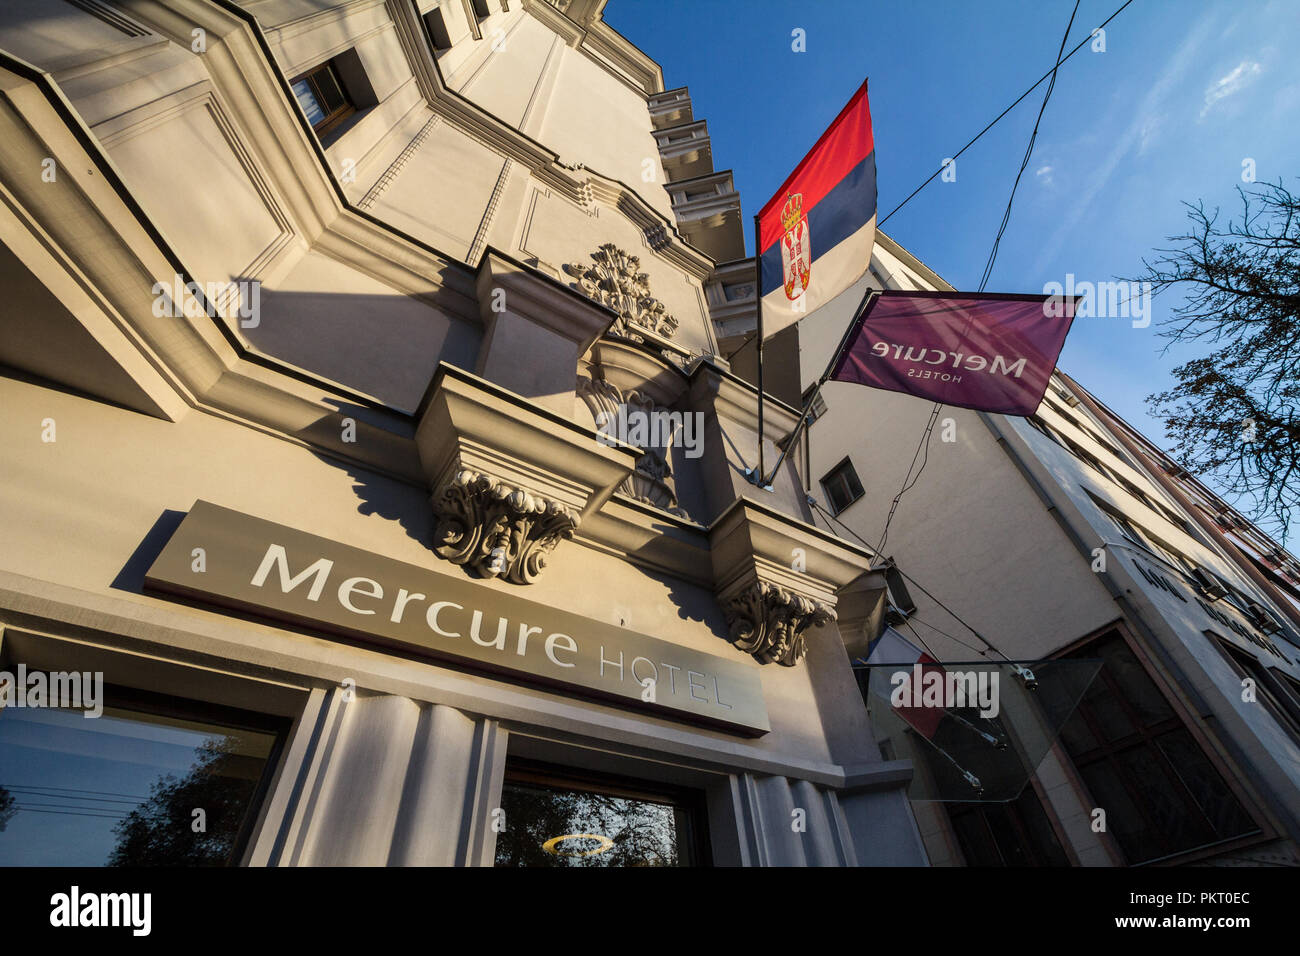 A Belgrado, in Serbia - 12 settembre 2018: Mercure Hotel logo sulla loro attività principale per la Serbia. Mercure Hotels è una catena di hotel del gruppo Accorhotel Foto Stock